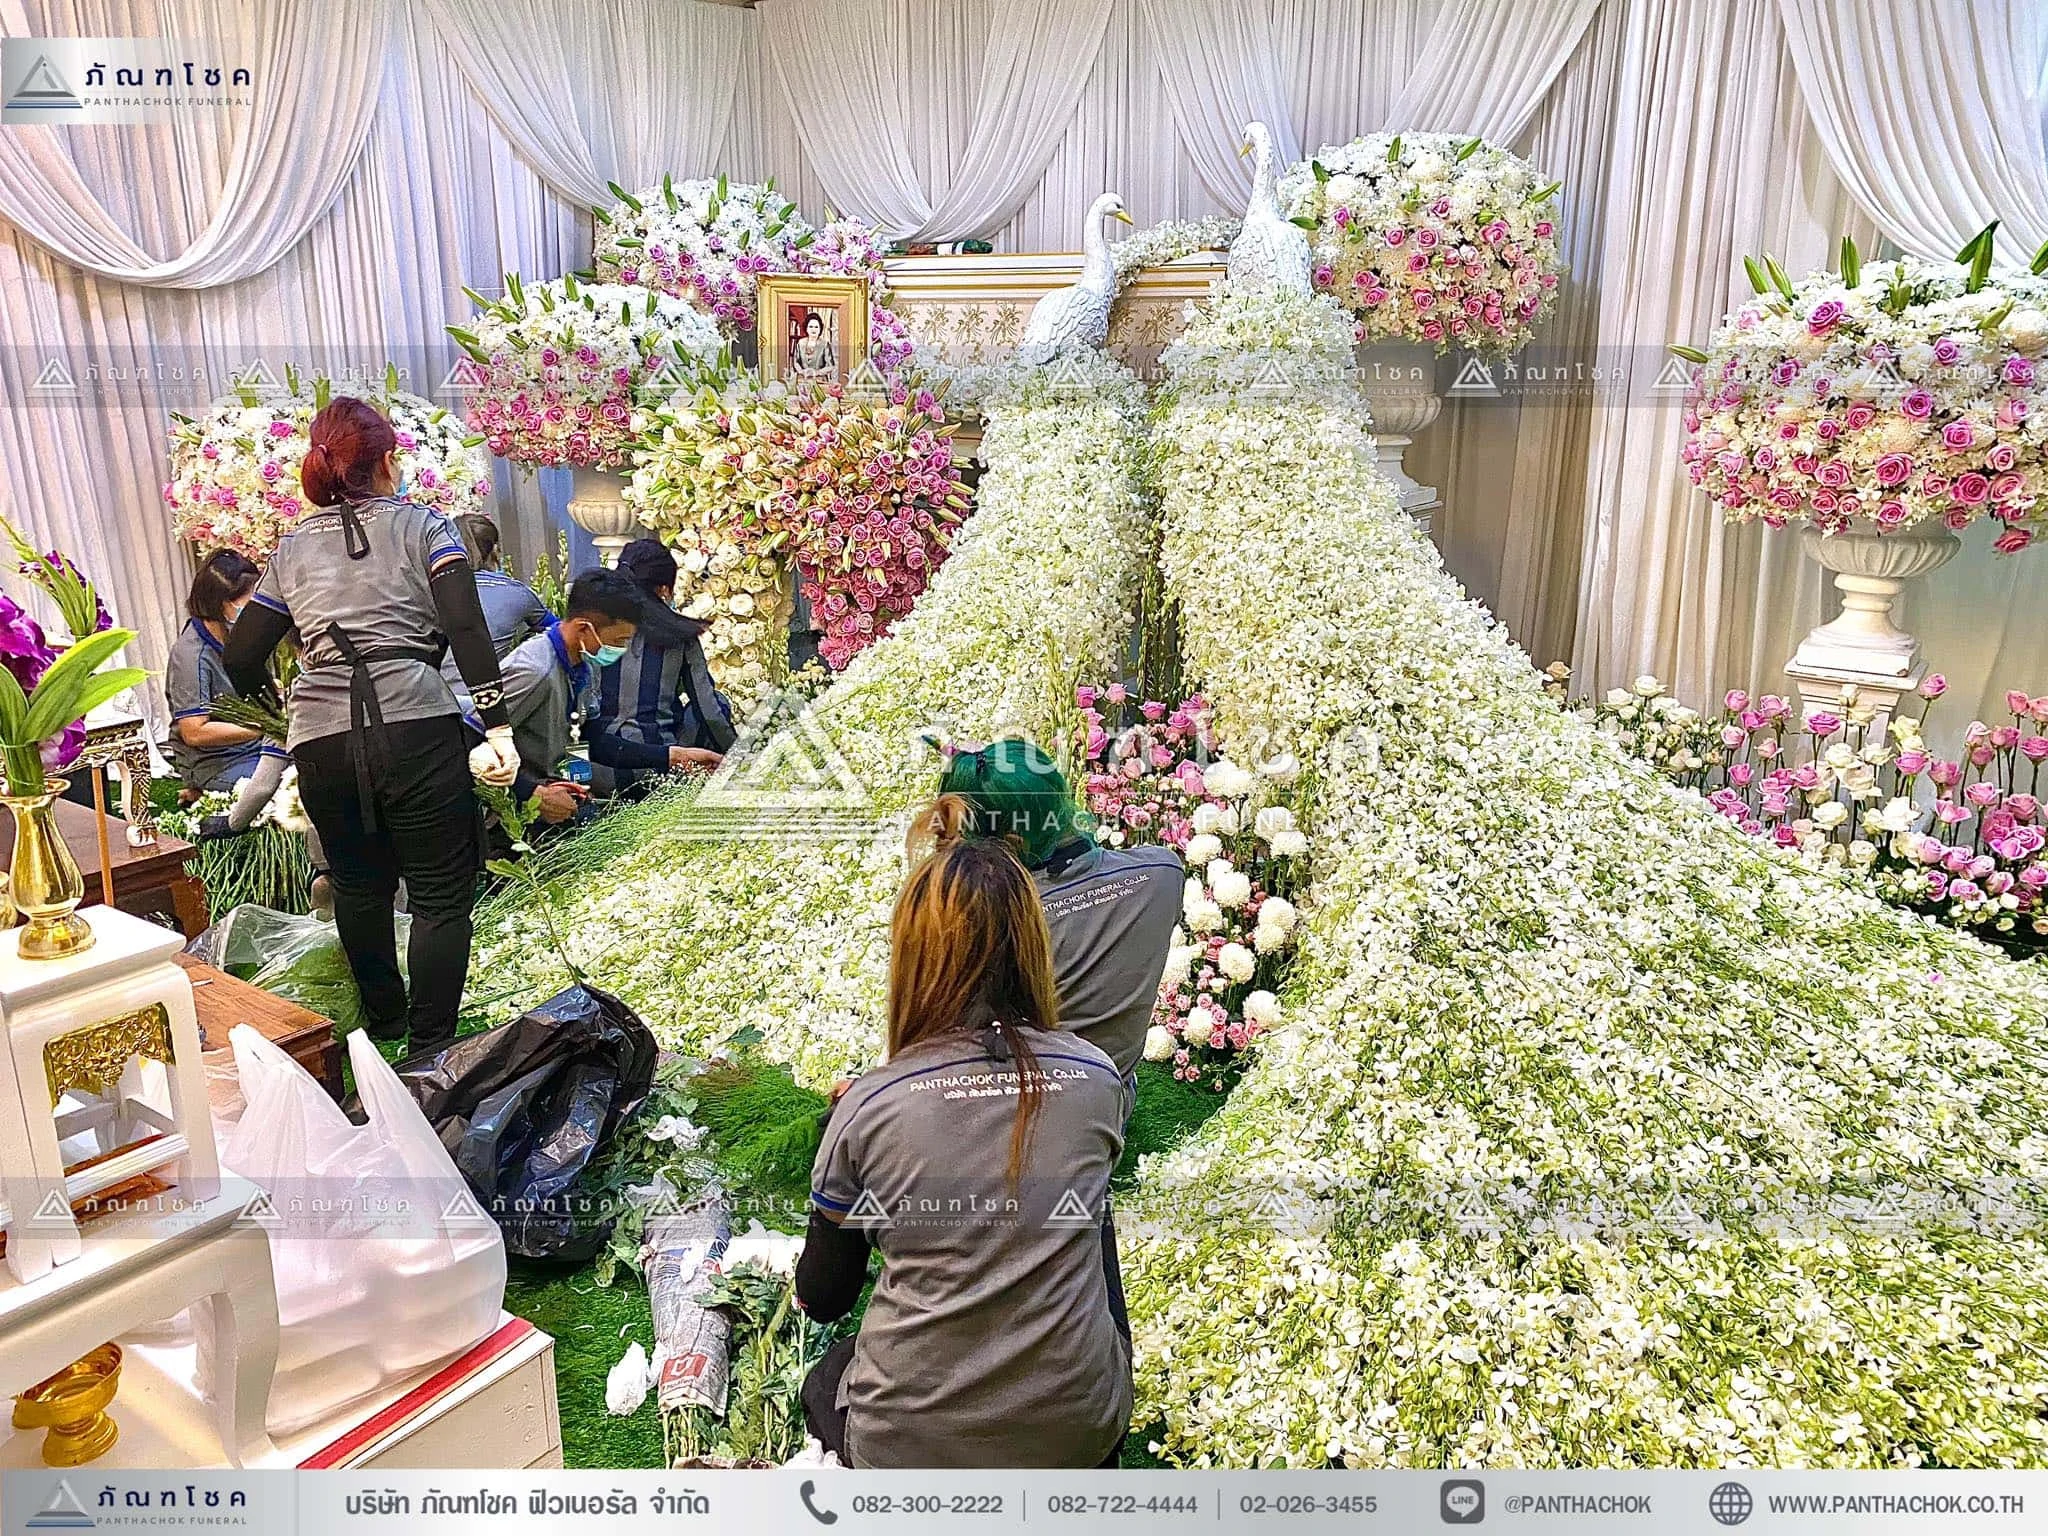 ดอกไม้สดหน้าศพกรุงเทพแบบหรูหรา ดอกไม้งานศพ รับจัดงานศพ ดอกไม้สดหน้าศพสวยหรู